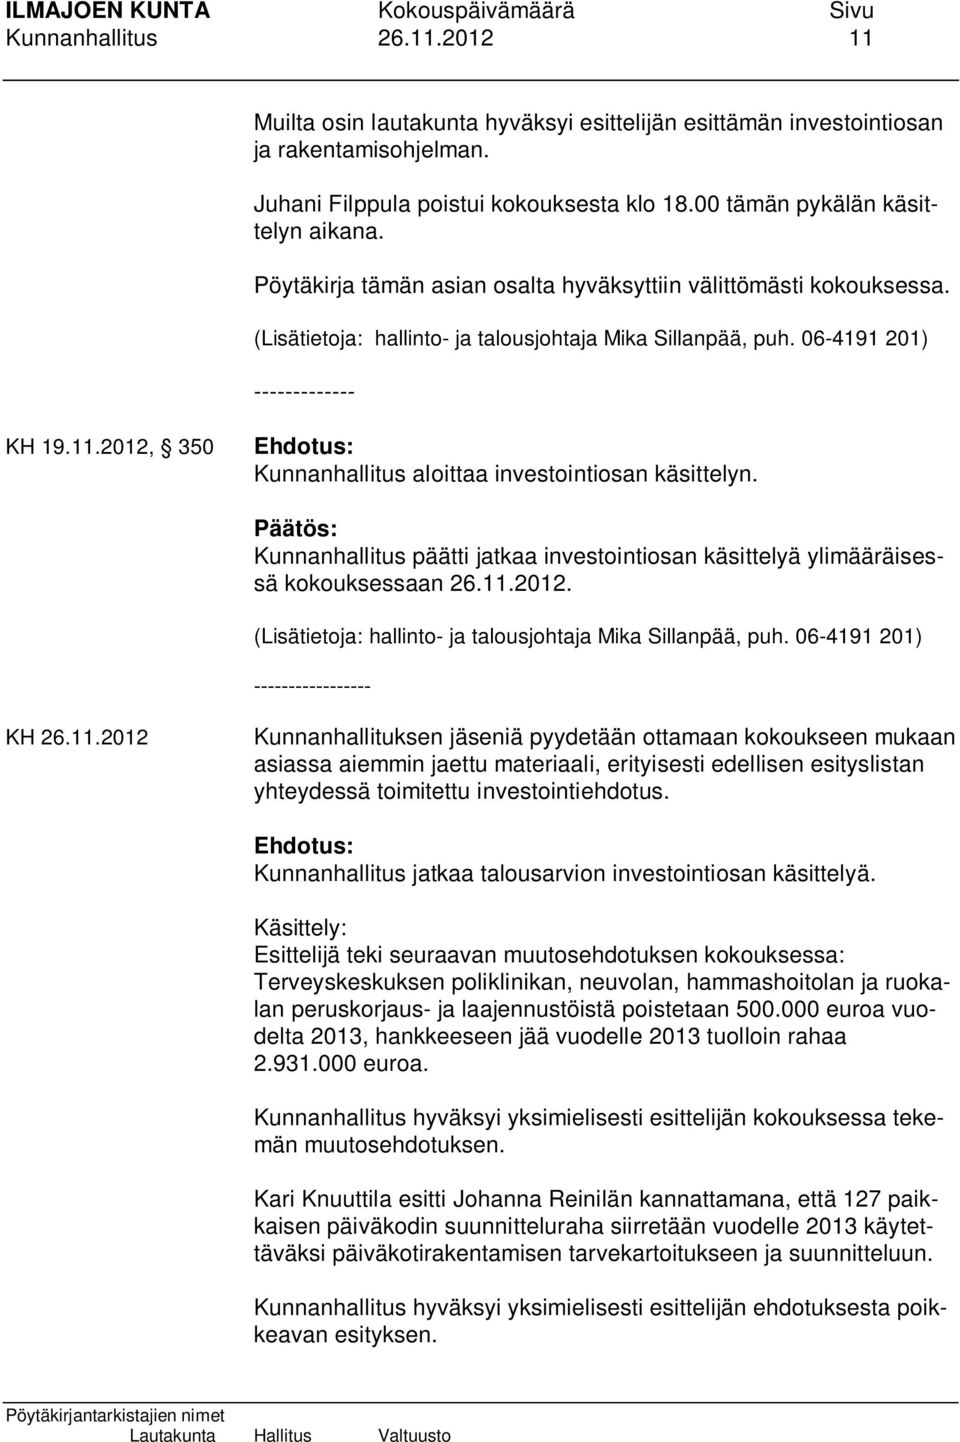 2012, 350 Kunnanhallitus aloittaa investointiosan käsittelyn. Kunnanhallitus päätti jatkaa investointiosan käsittelyä ylimääräisessä kokouksessaan 26.11.2012. (Lisätietoja: hallinto- ja talousjohtaja Mika Sillanpää, puh.